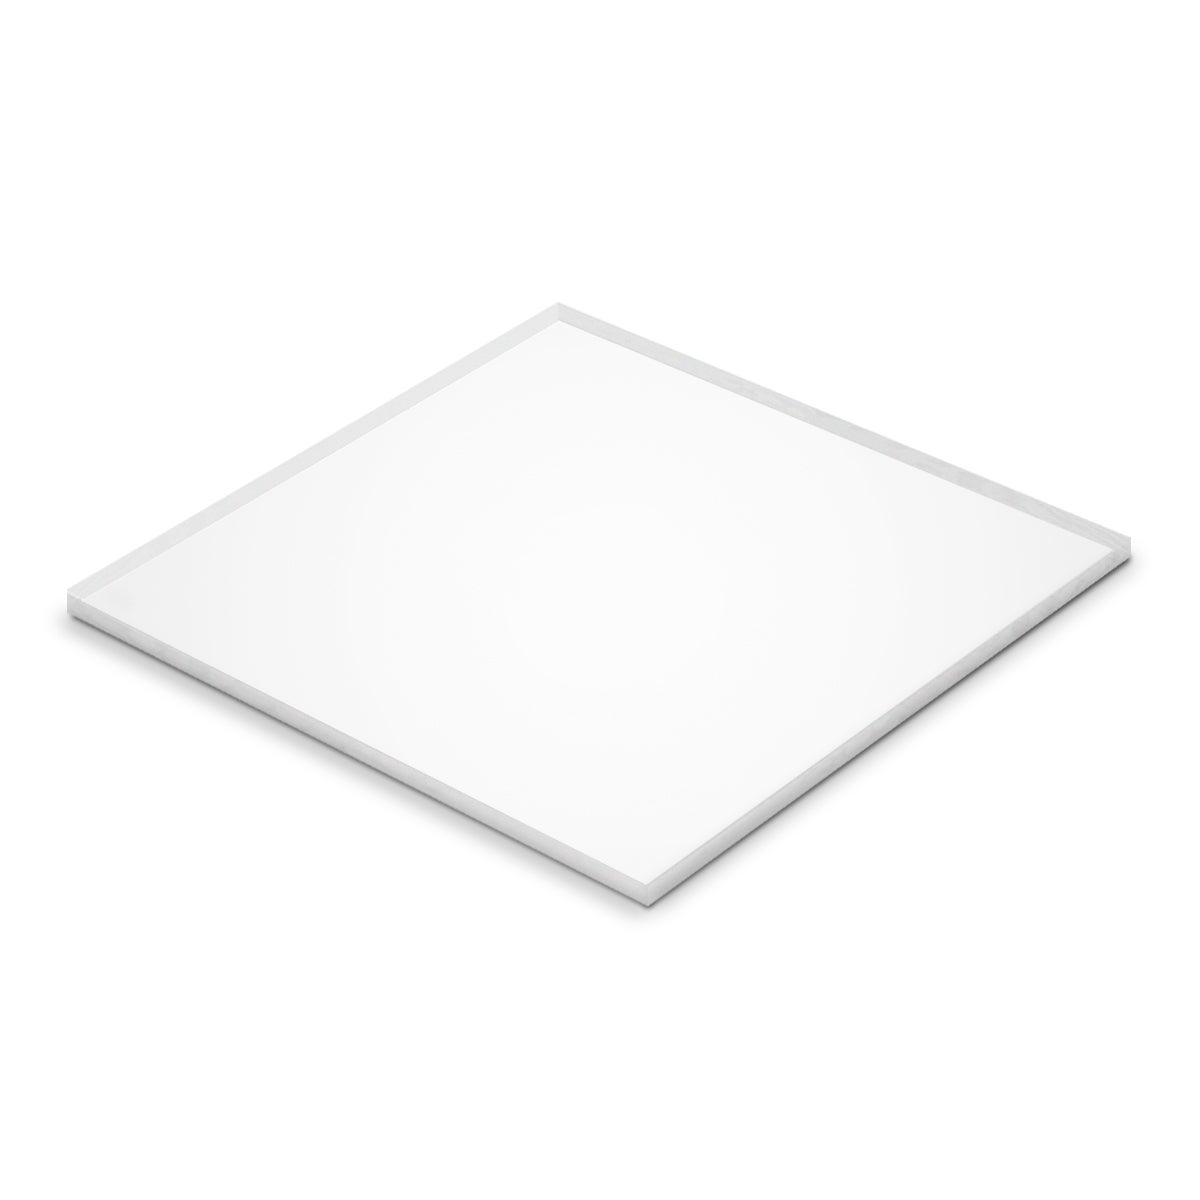 Plancha de metacrilato Tauro Transparente 100x50 3 mm de grosor PACK de 2  unidades. Resistente, Transparente y Versátil.